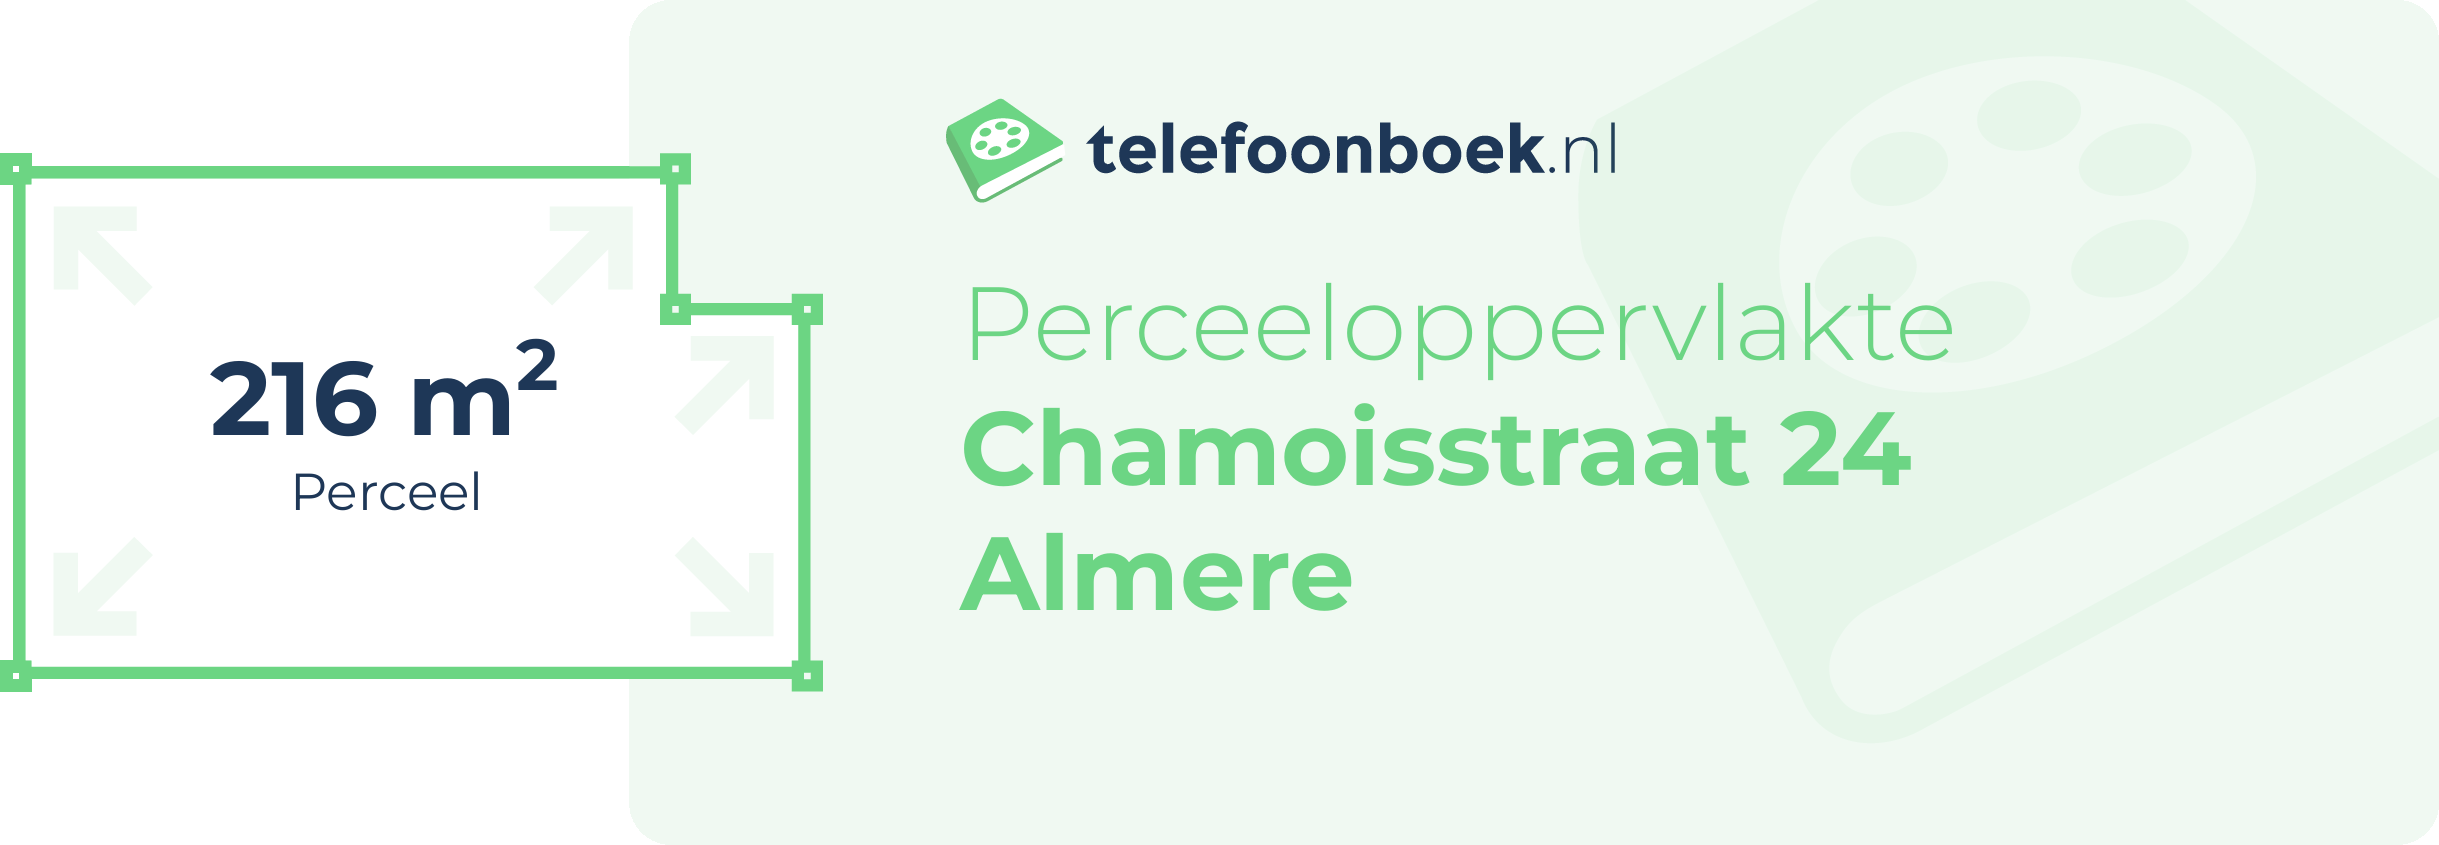 Perceeloppervlakte Chamoisstraat 24 Almere